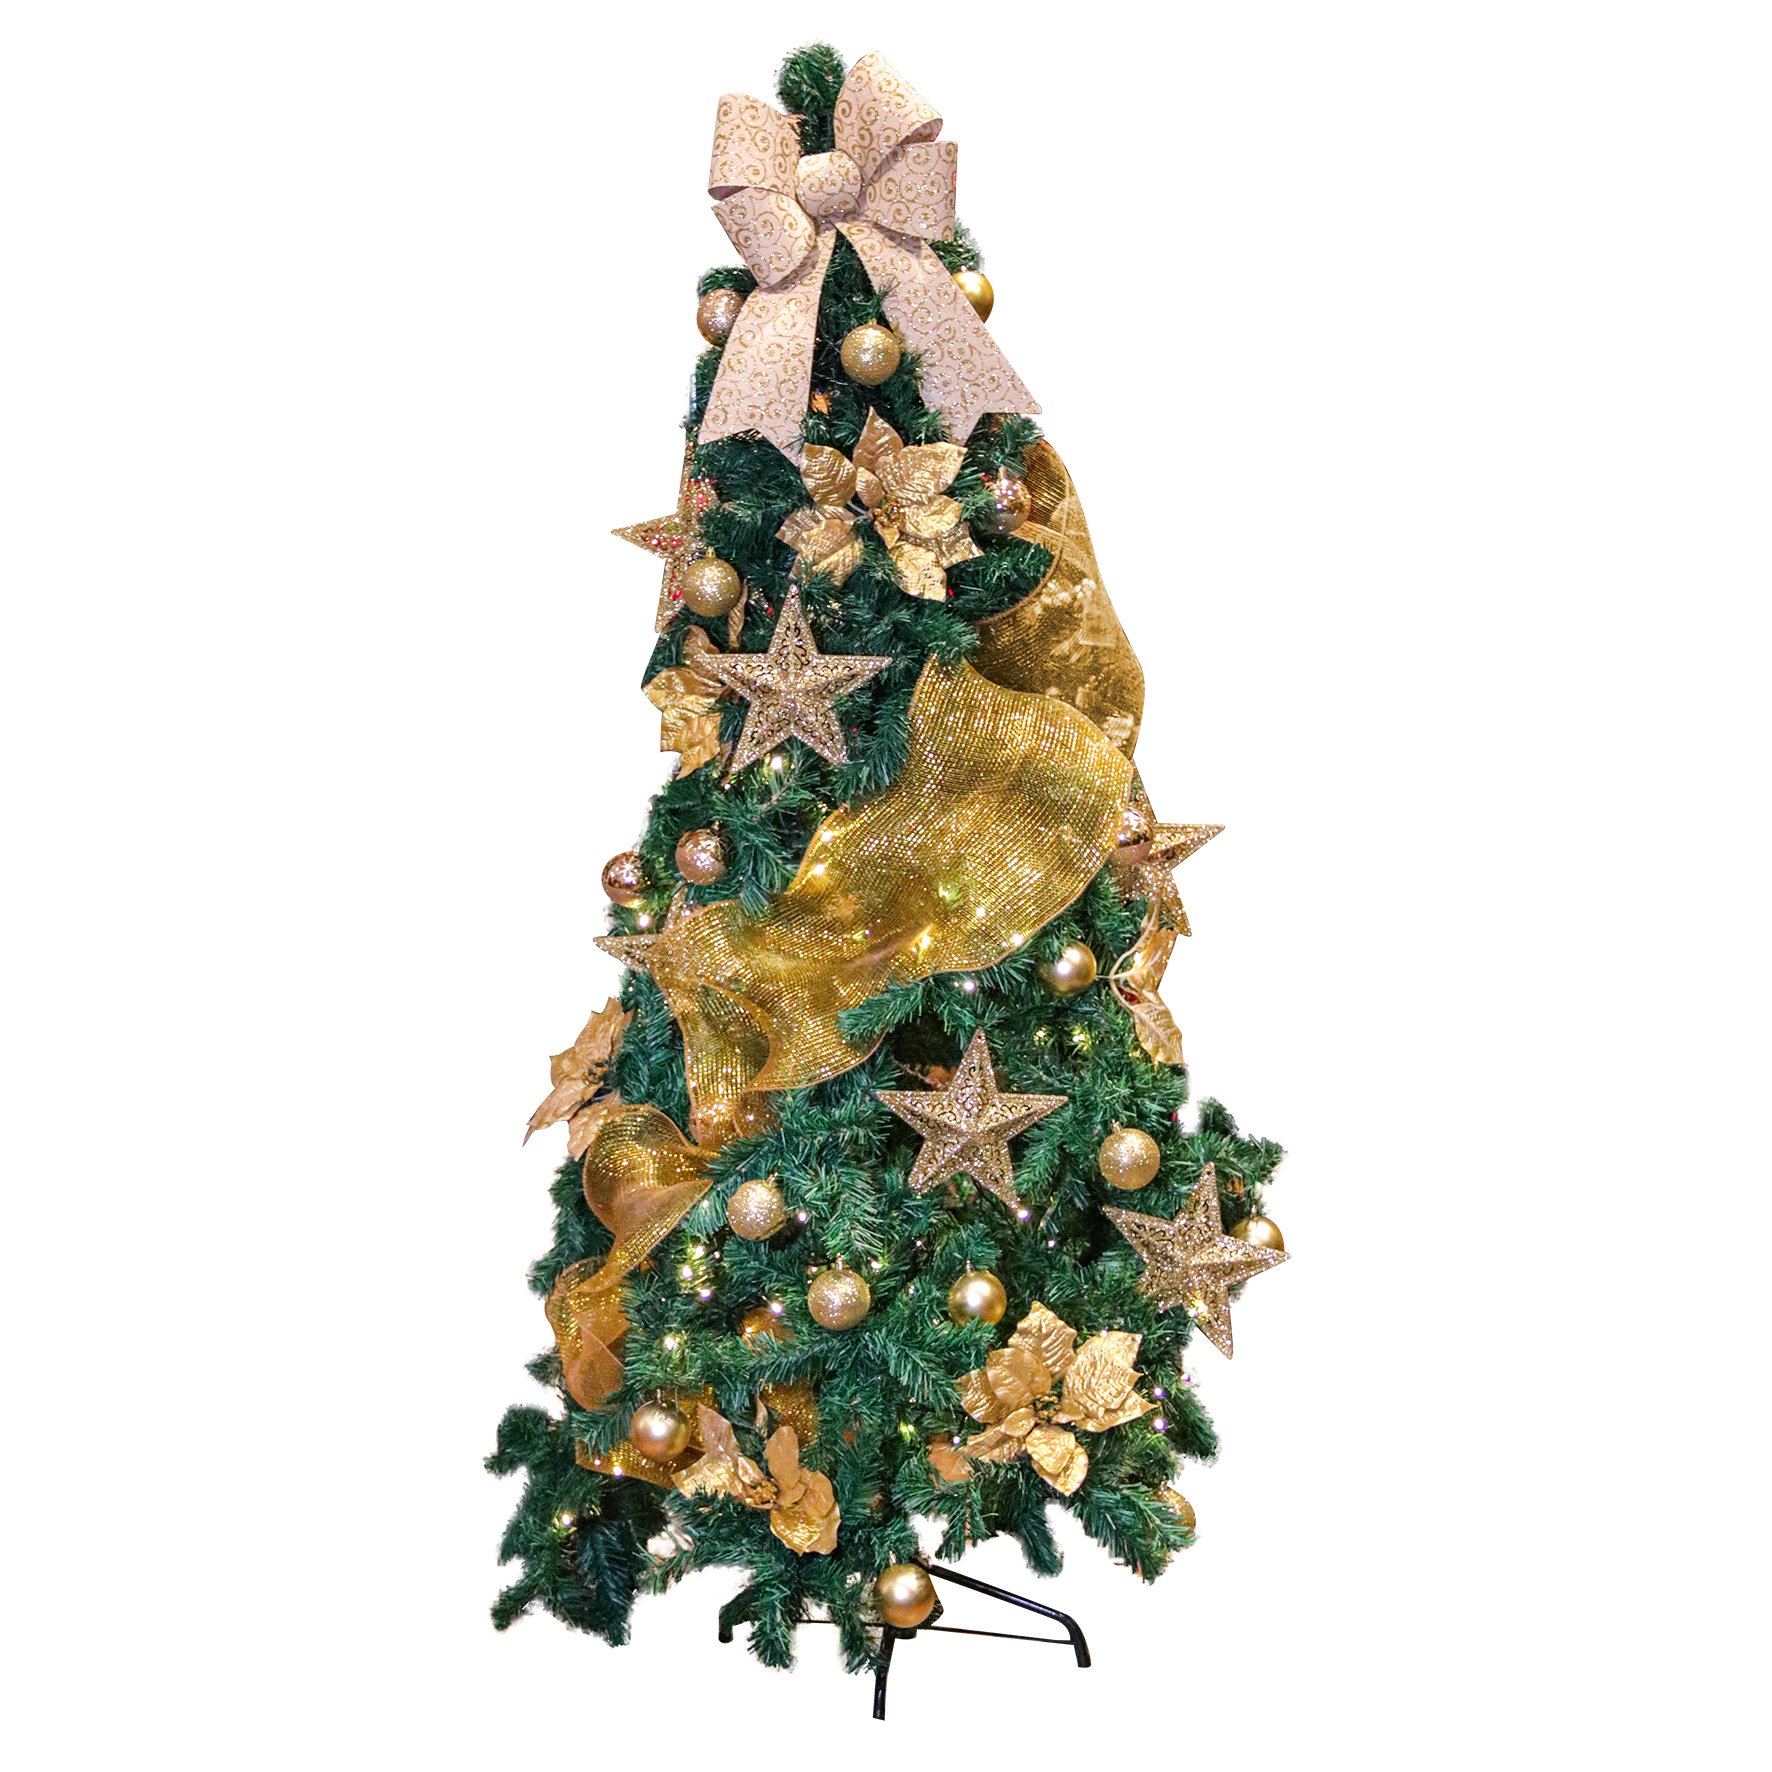 Árvore Natal Skiny 180cm 580 Galhos Enfeites Dourada Decorada Pisca-pisca  110v | MadeiraMadeira